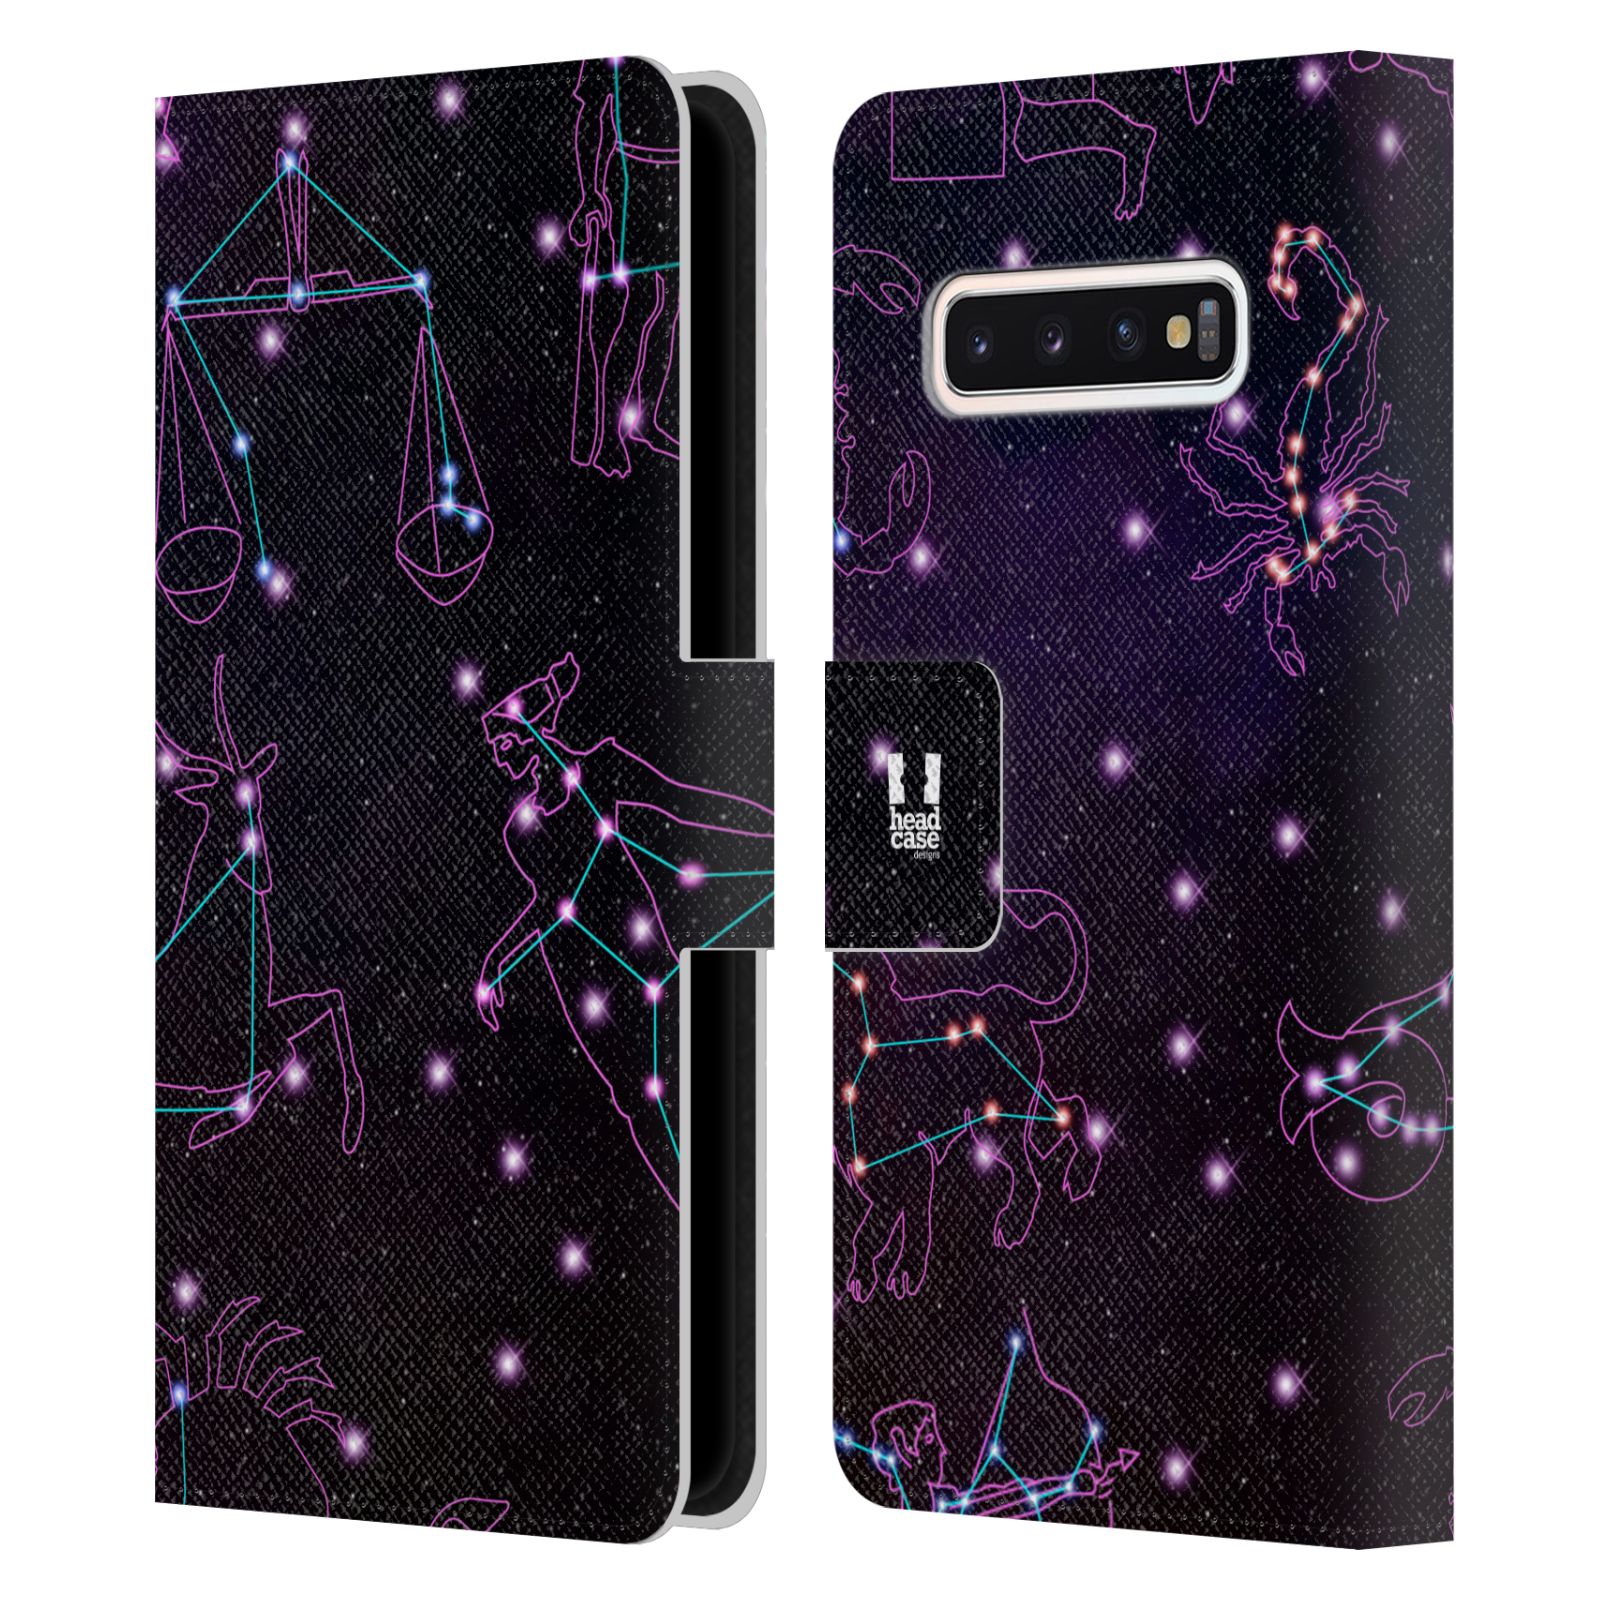 Pouzdro HEAD CASE na mobil Samsung Galaxy S10 znamení zvěrokruhu fialová